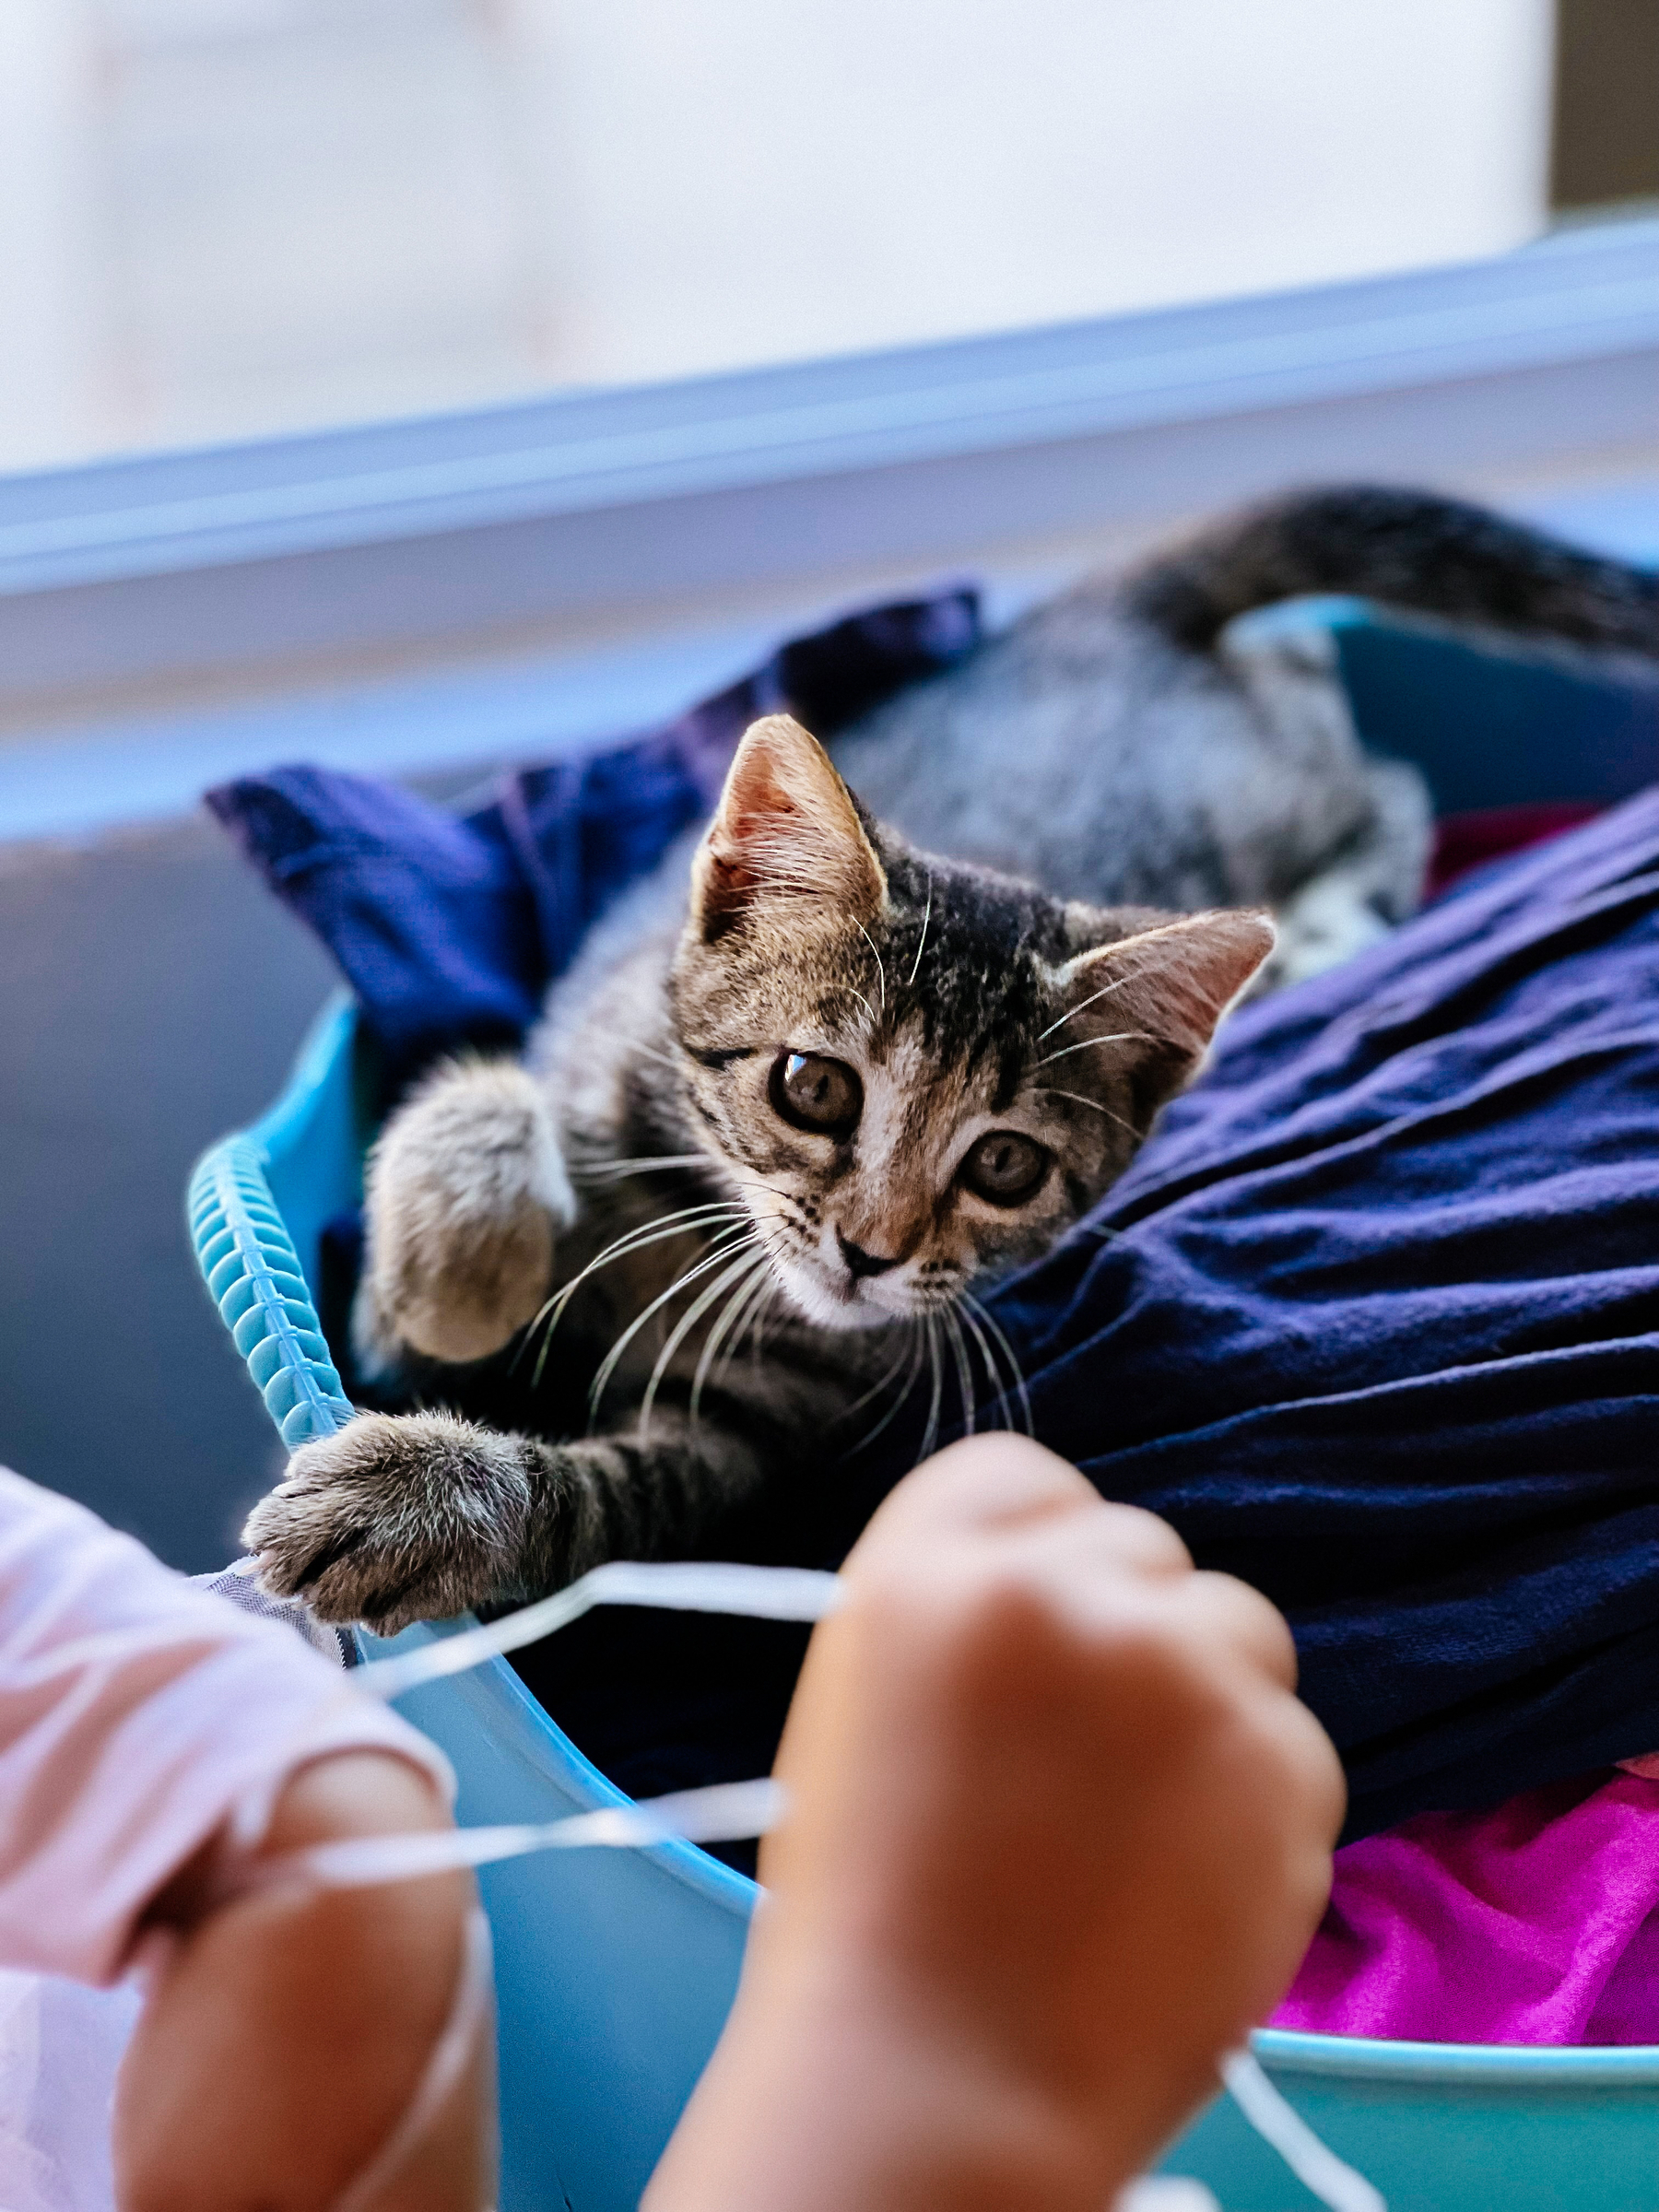 a kitten in a laundry basket